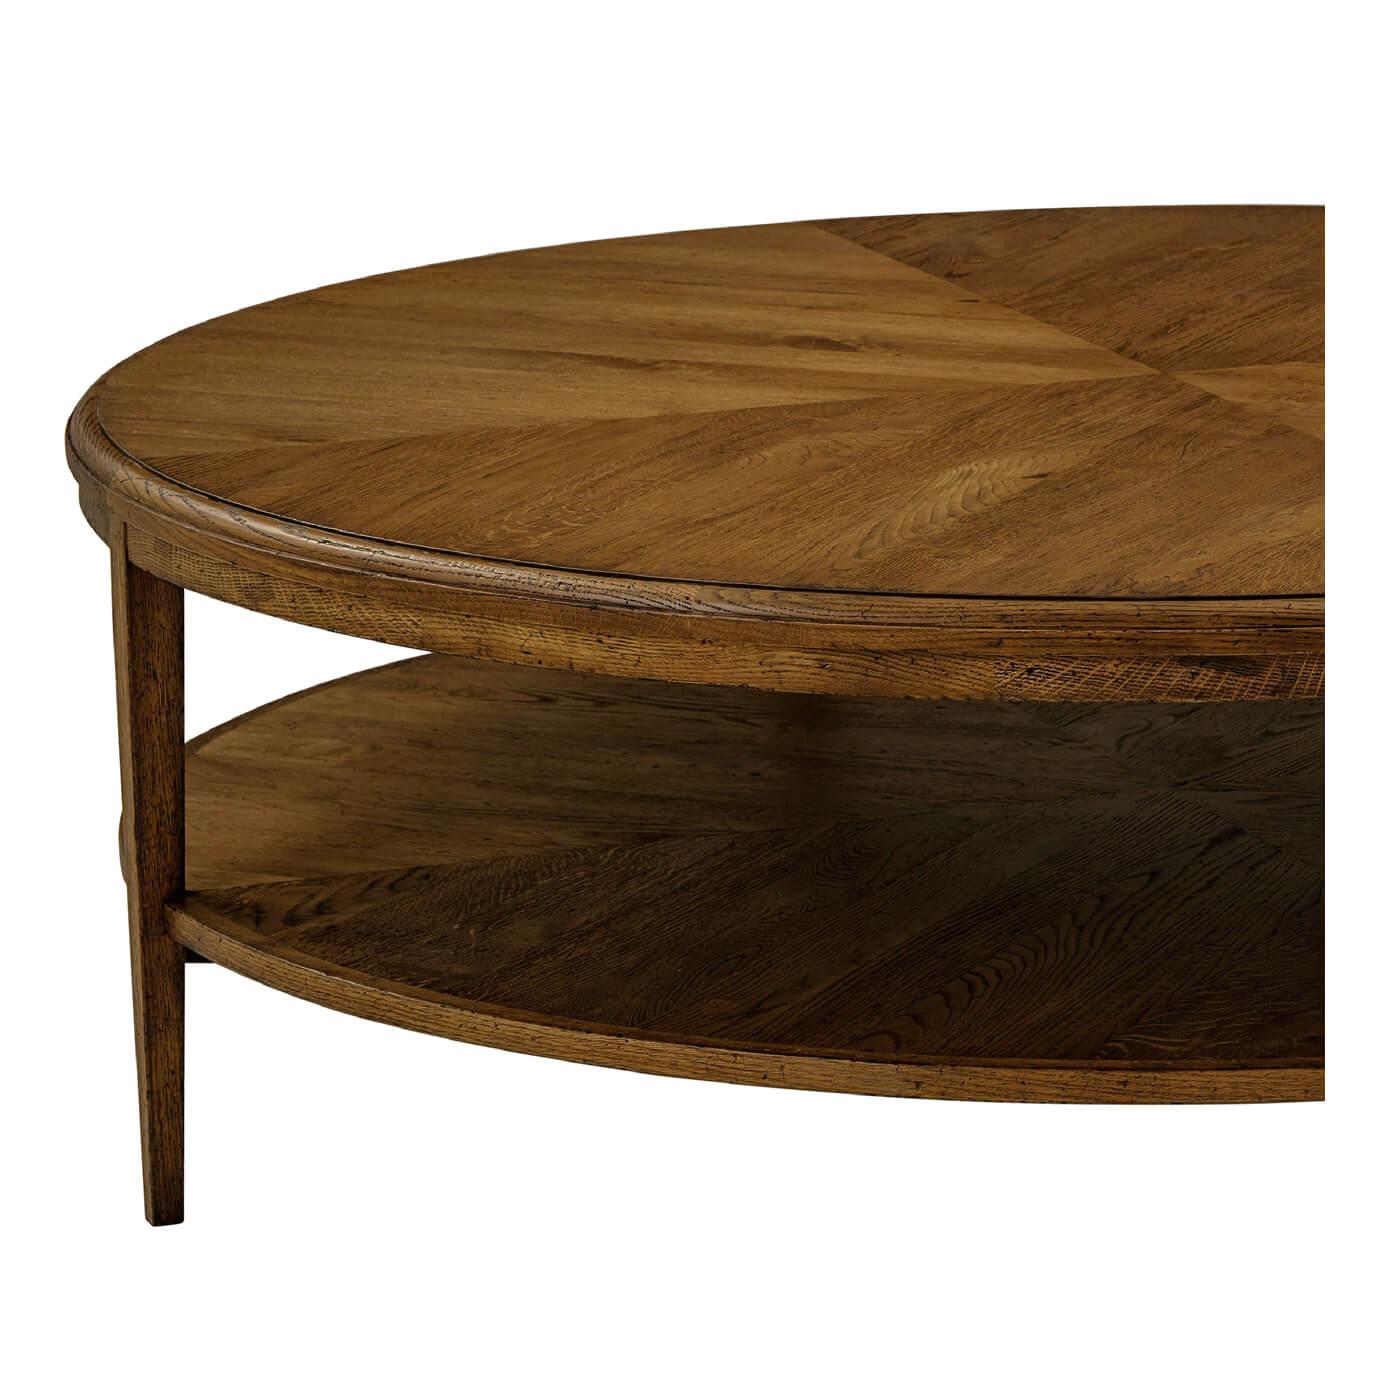 Table basse ronde moderne en parquet de chêne foncé avec une assise concentrique en chêne sur un pied conique en chêne. Finition en chêne foncé Dusk.

Dimensions : 52